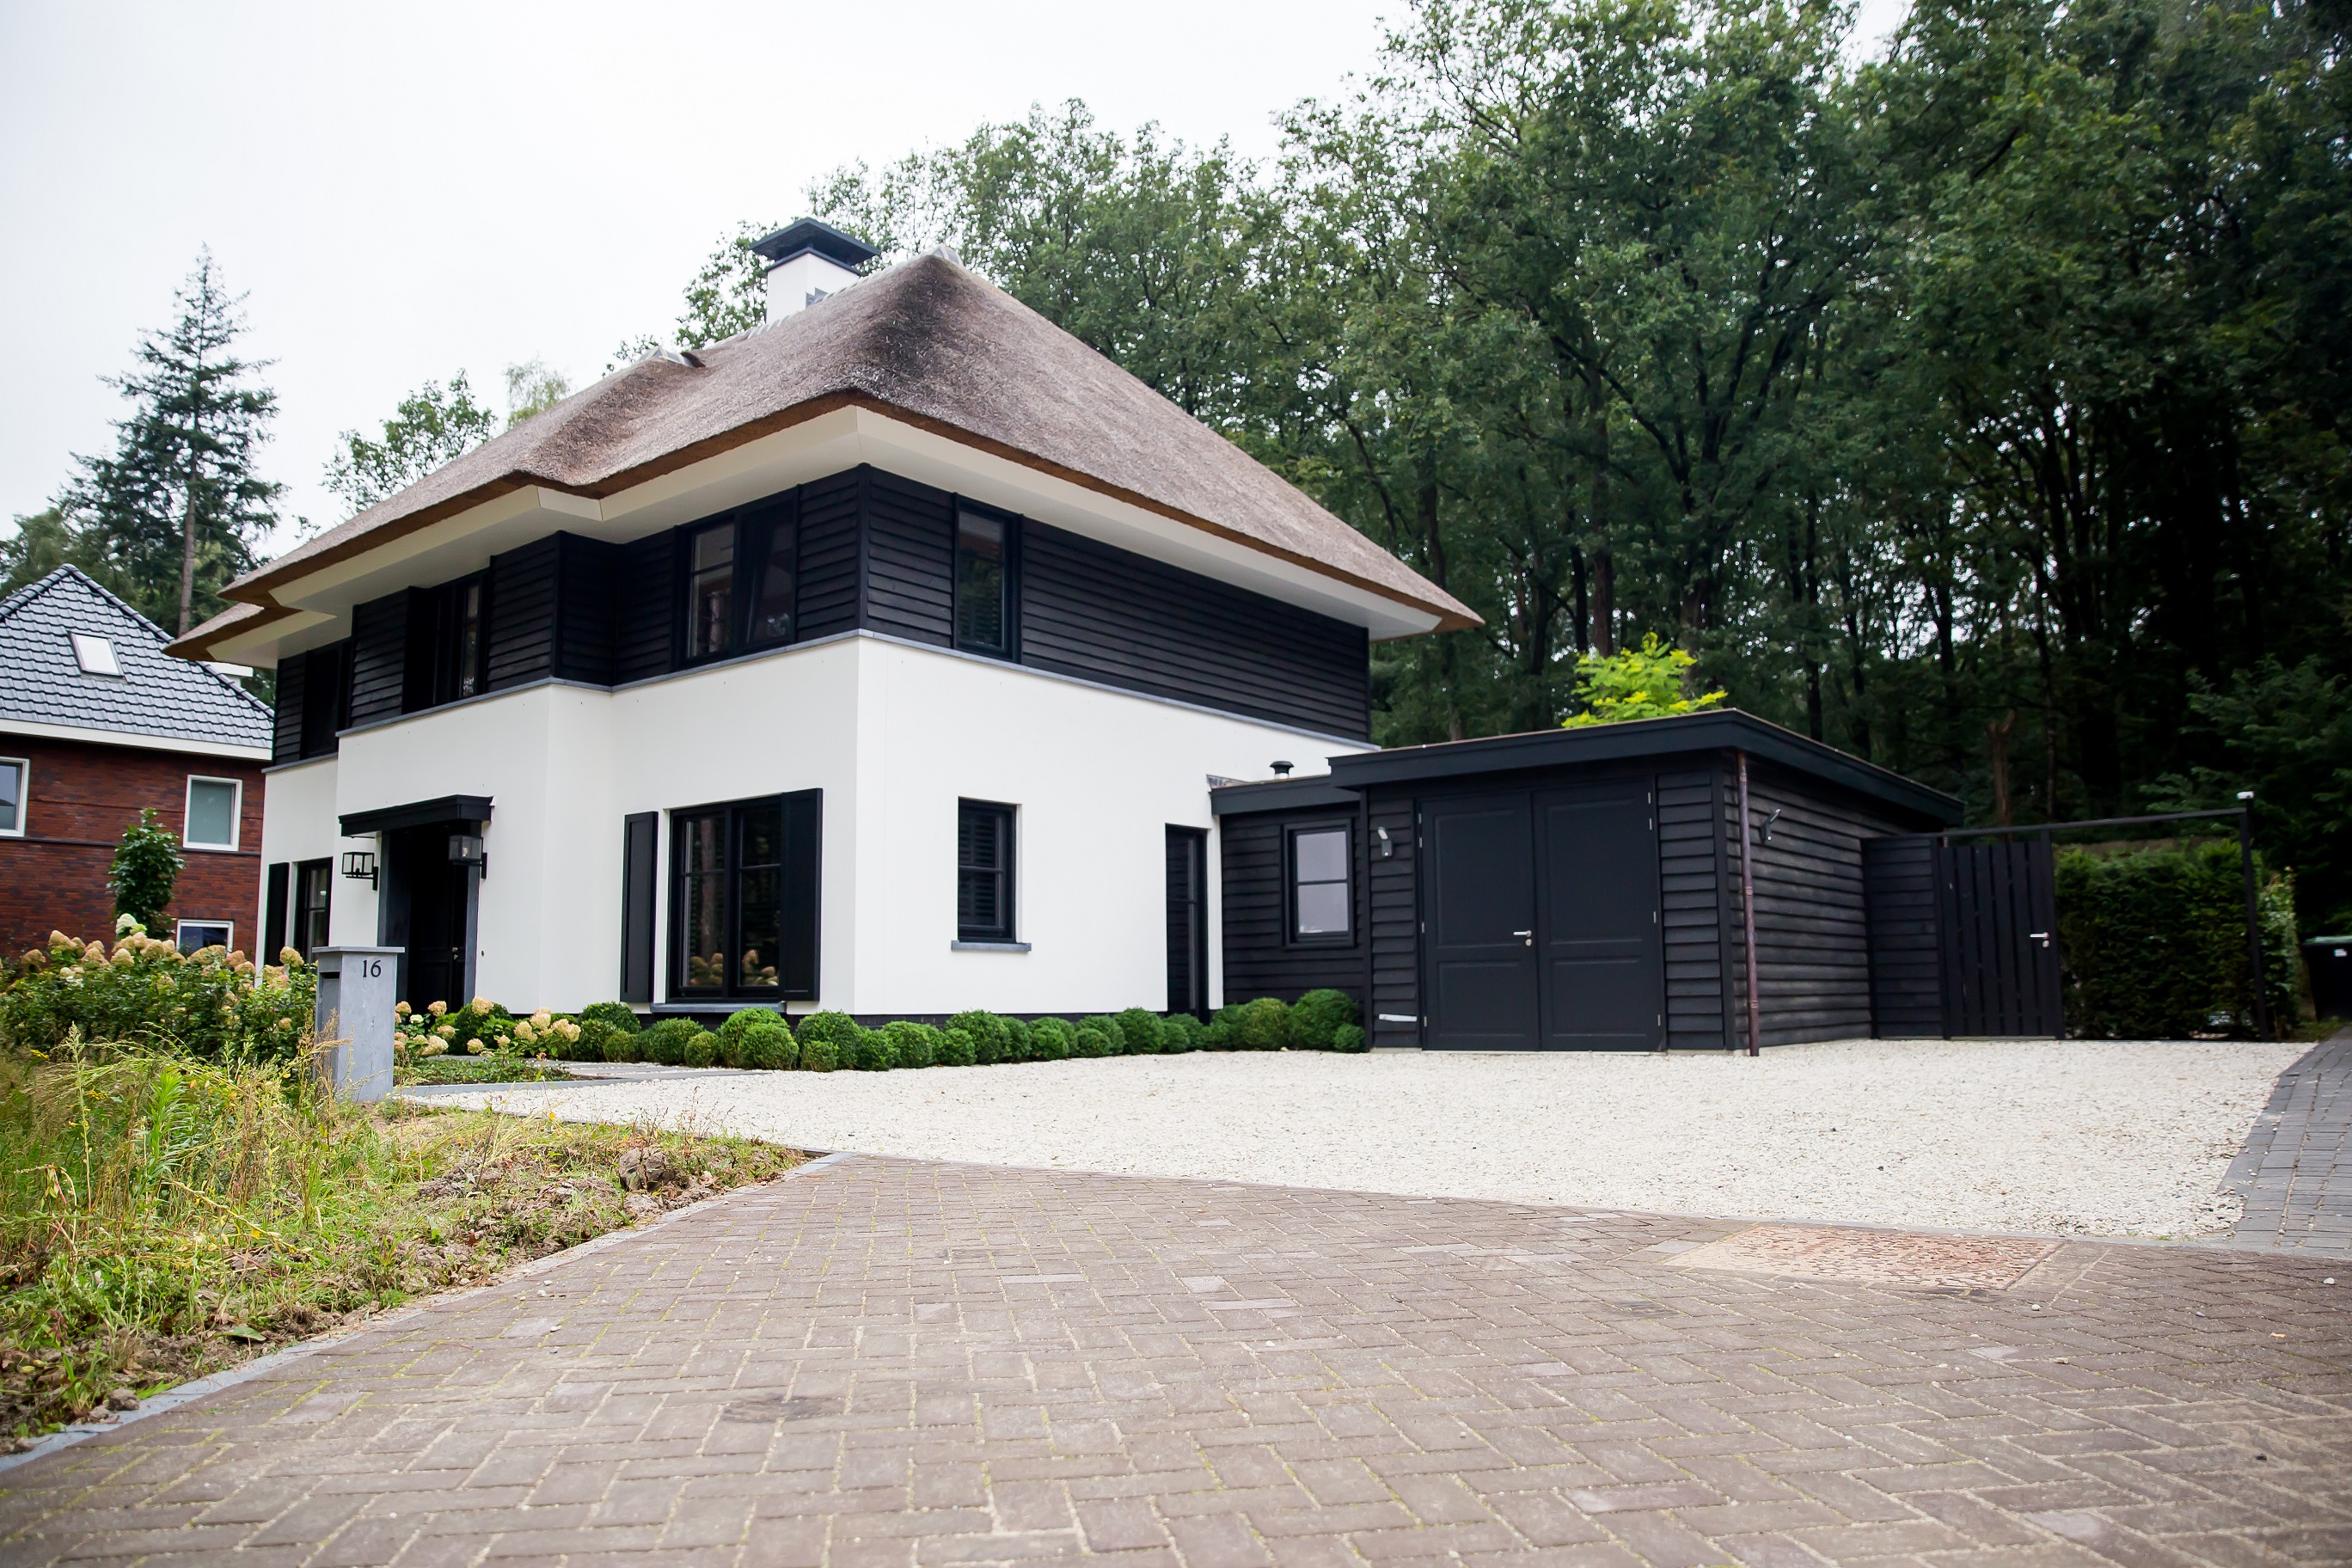 Foto: Huis bouwen   Rietgedekte villa Nachtpauwoog te Apeldoorn   Architectuurwonen  5 